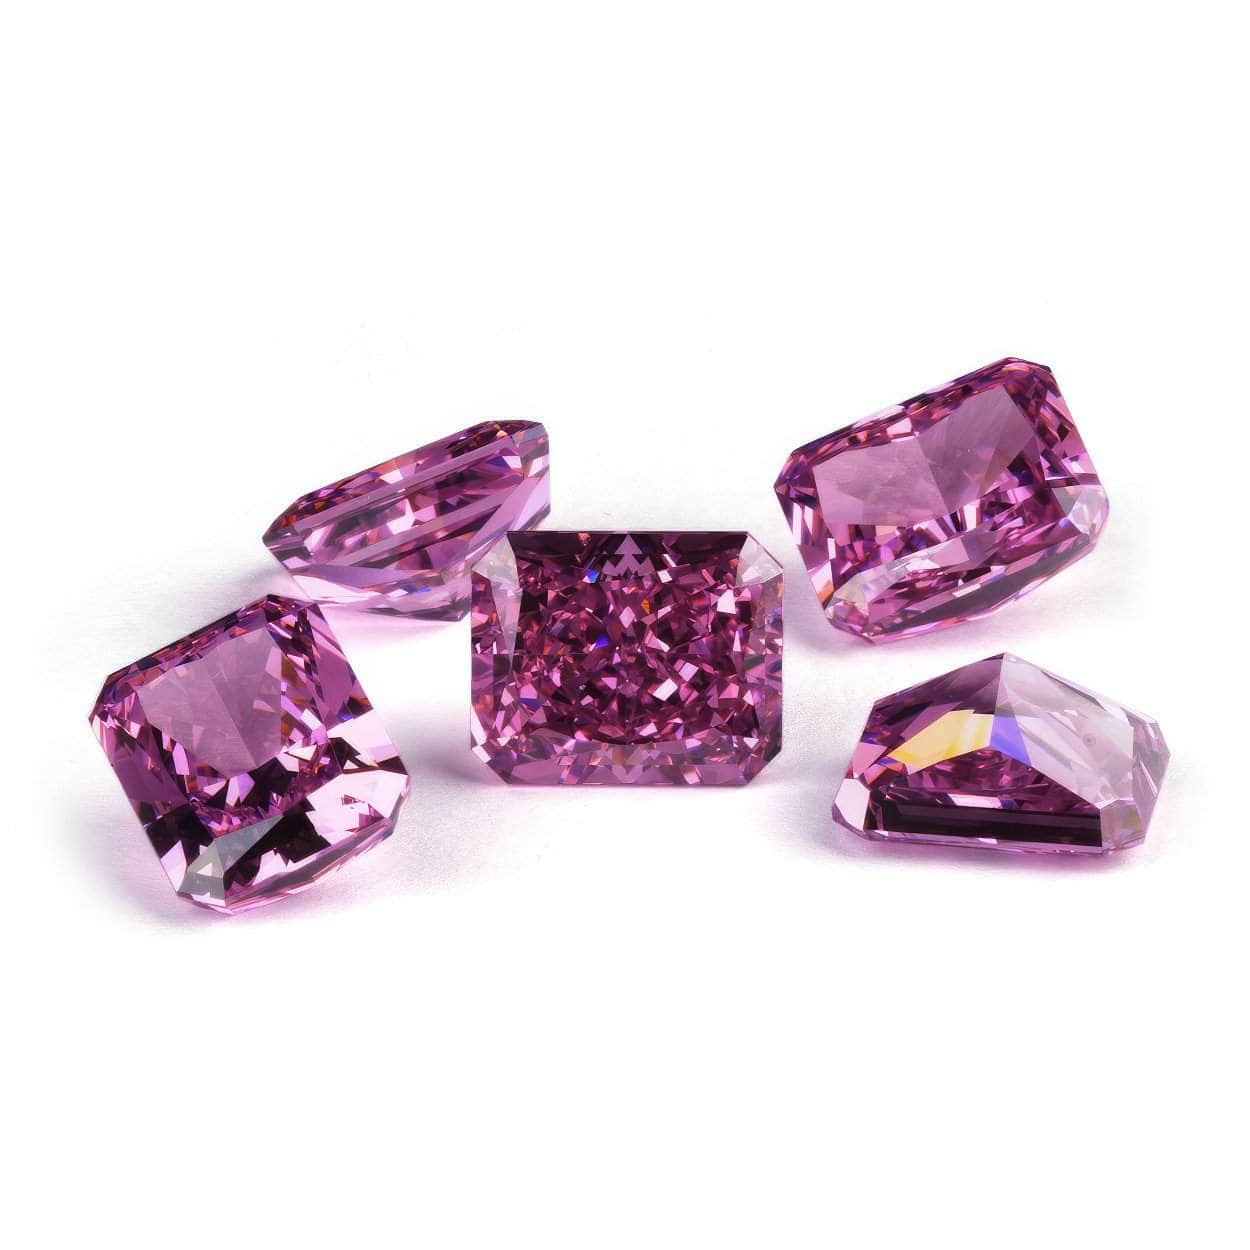 3-Set Rose Pink Emerald-Cut Rectangular Lab-Grown Diamond Gemstone